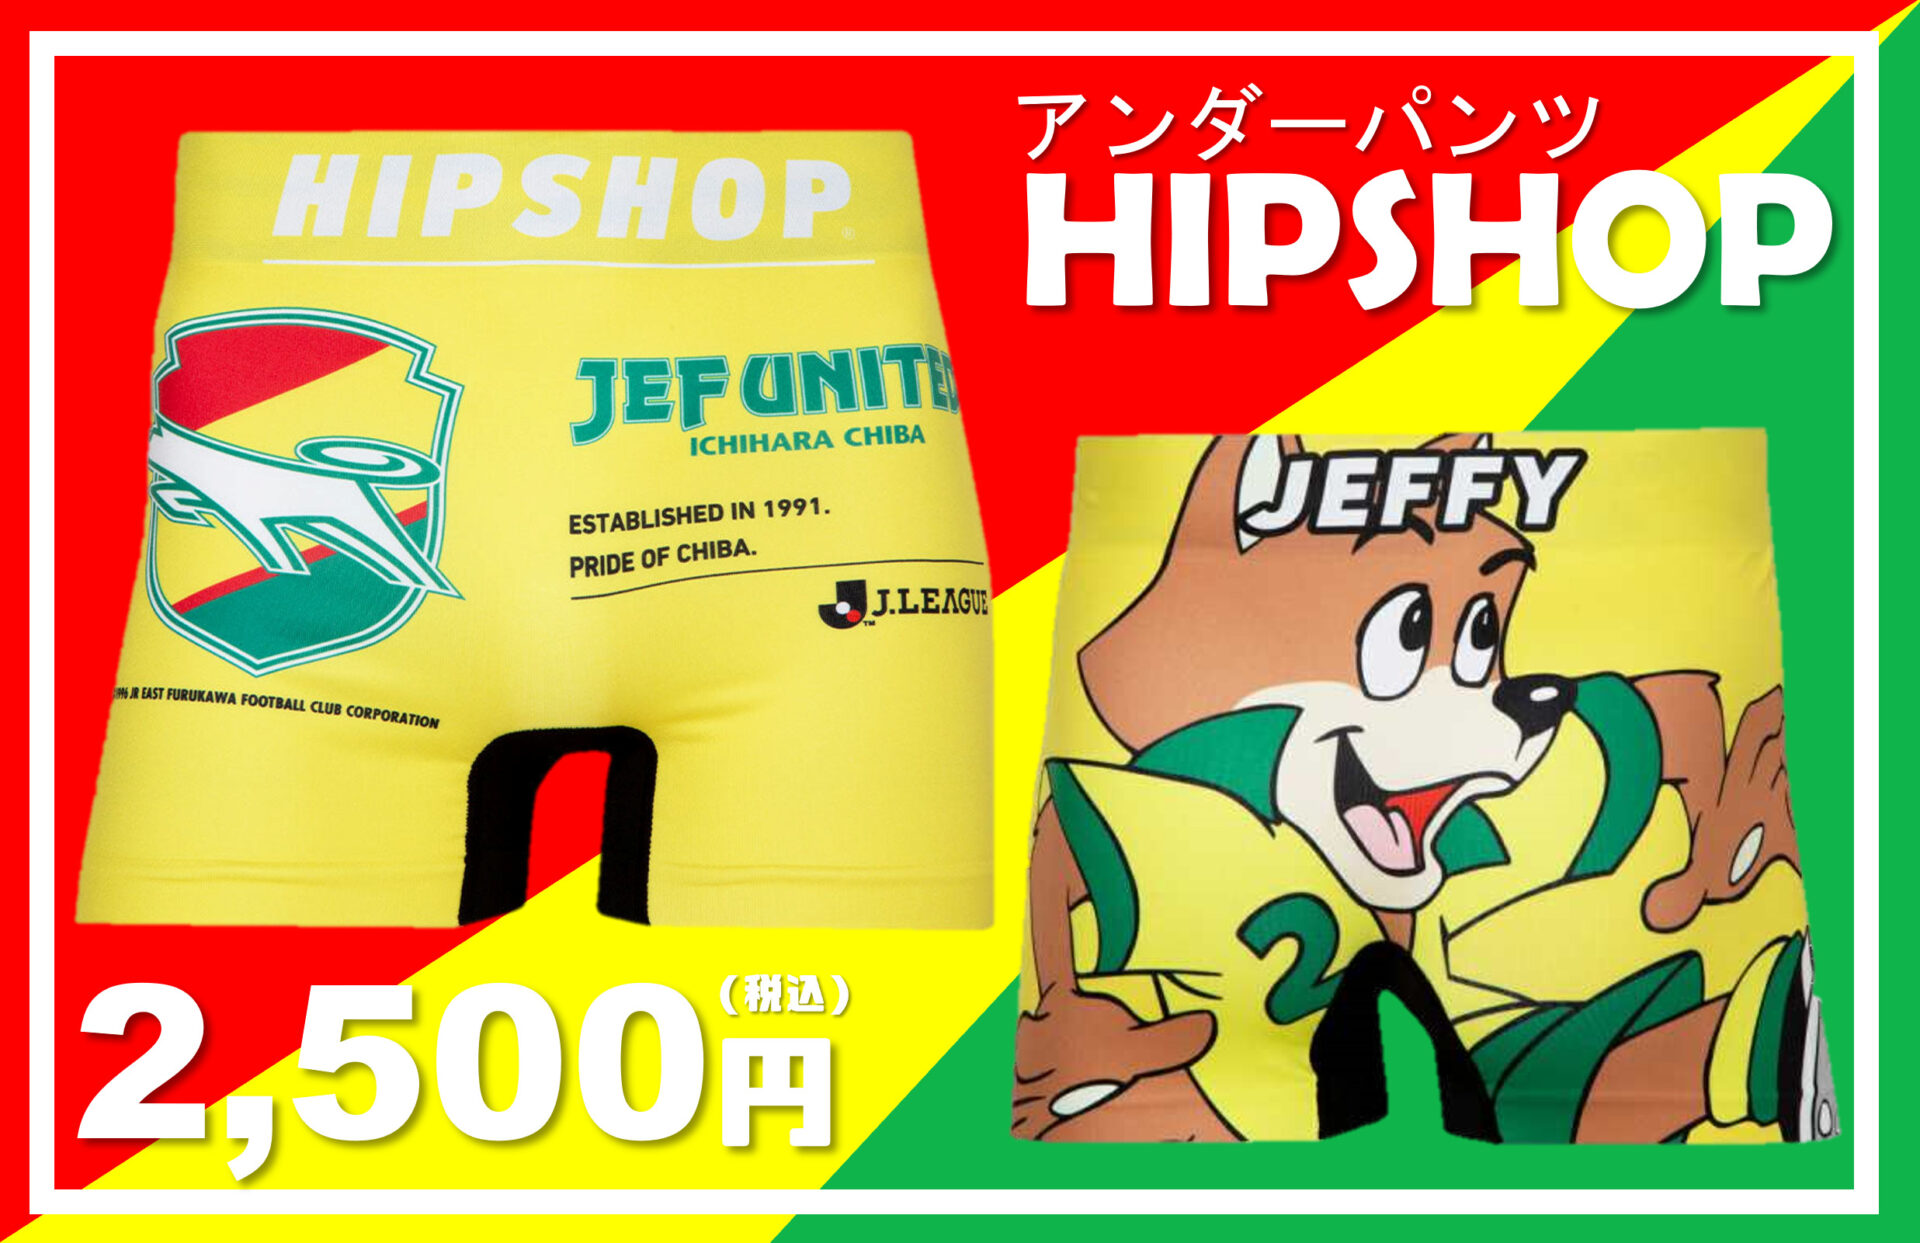 【HIPSHOP:アンダーパンツ】ジェフユナイテッド千葉